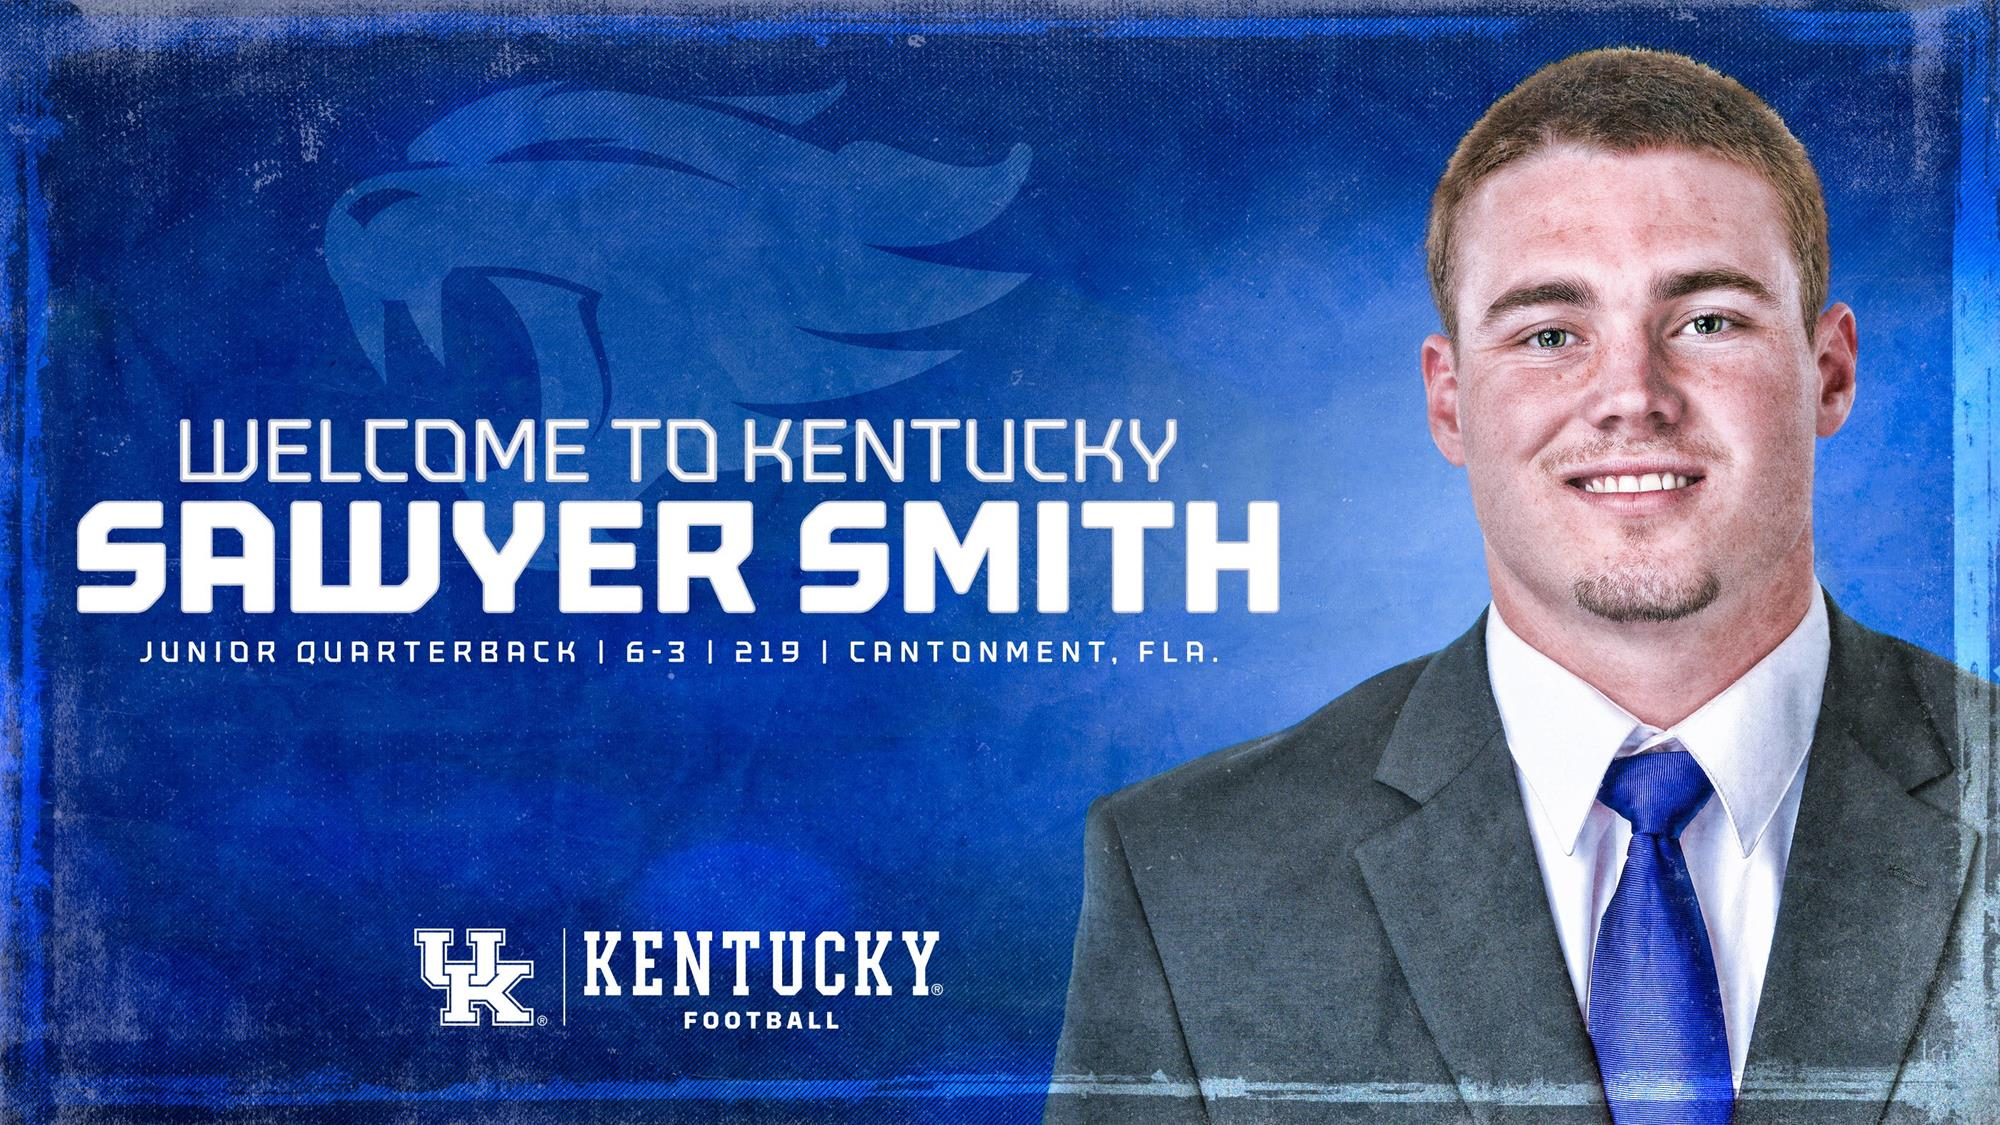 Quarterback Sawyer Smith Transfers to Kentucky